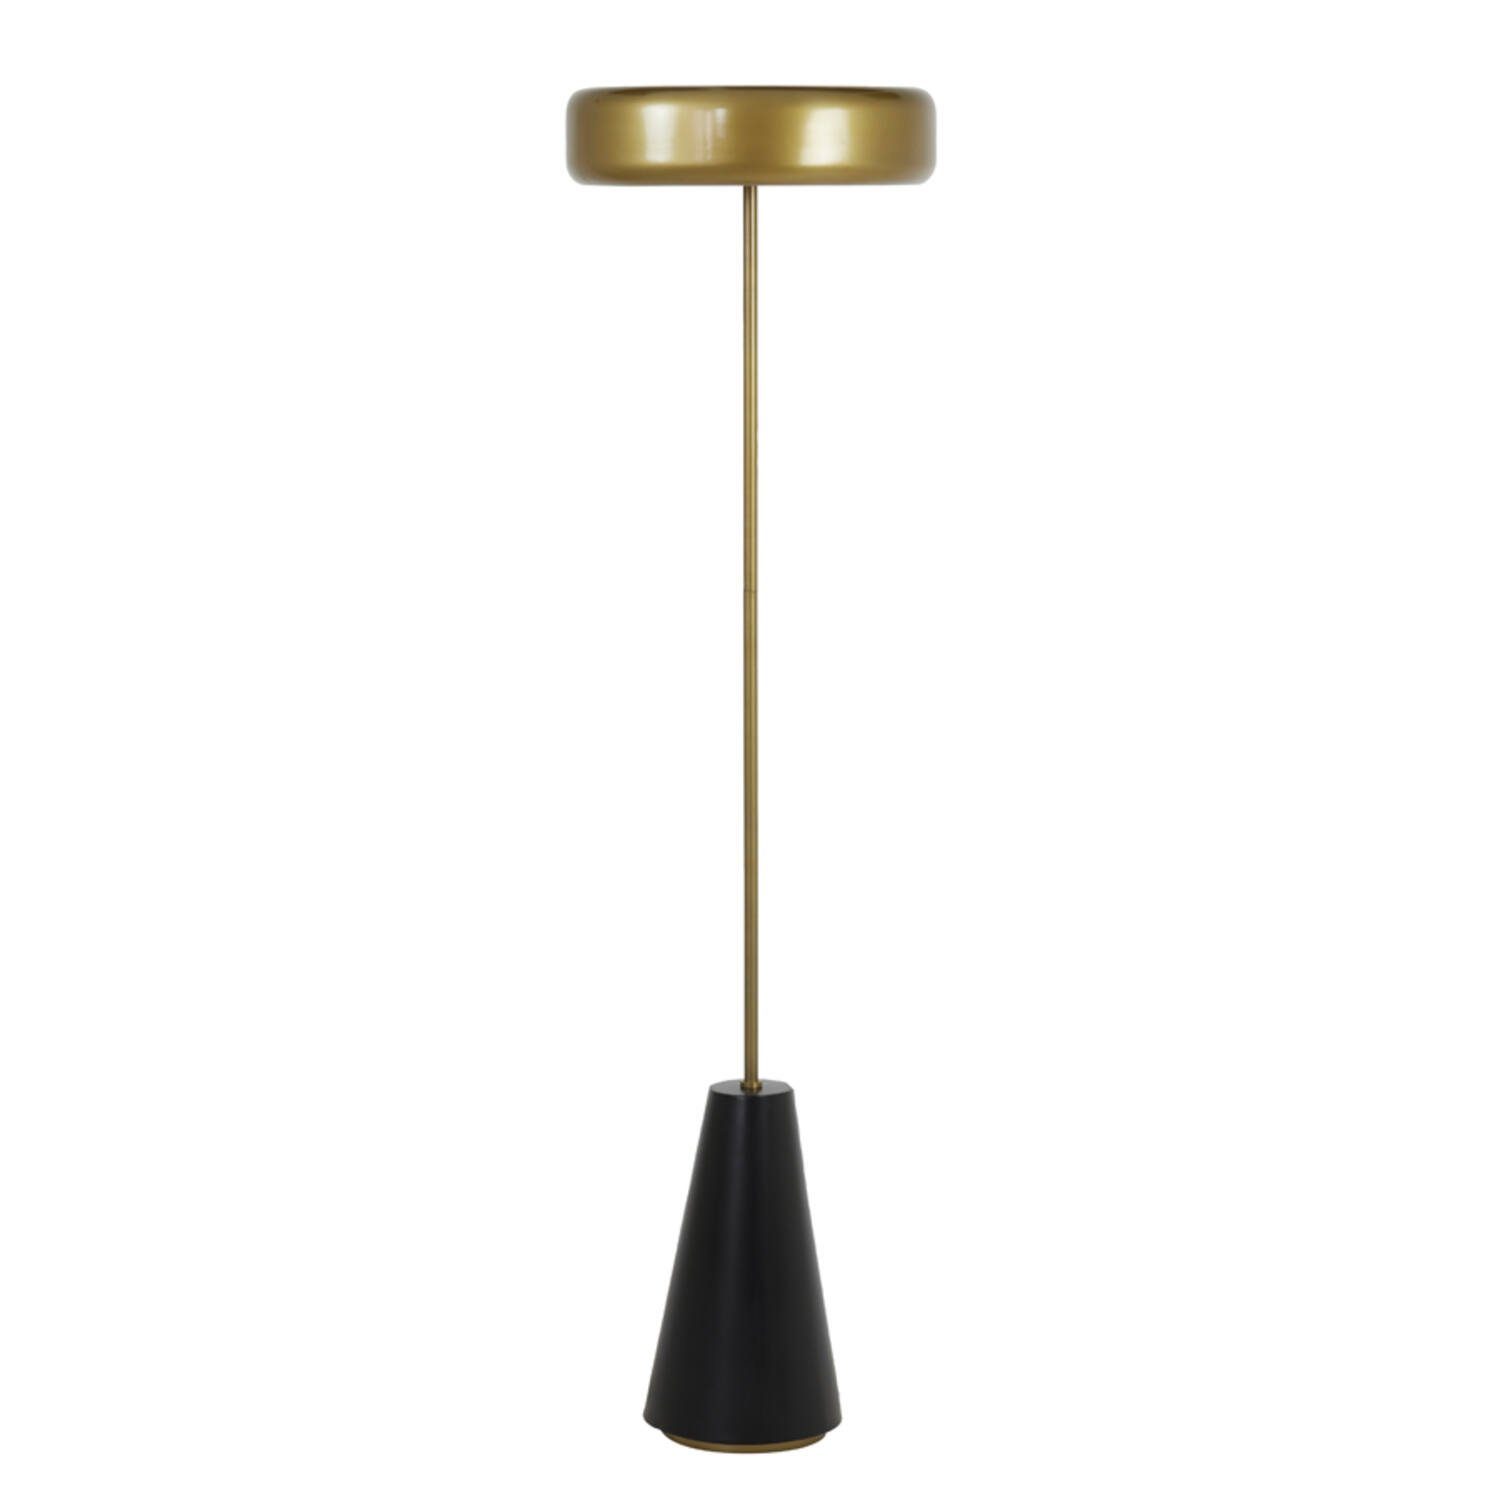 Light & Living Stehlampe Stehleuchte Lampe Light & Living NAGAI matt schwarz-antik bronze | Standleuchten